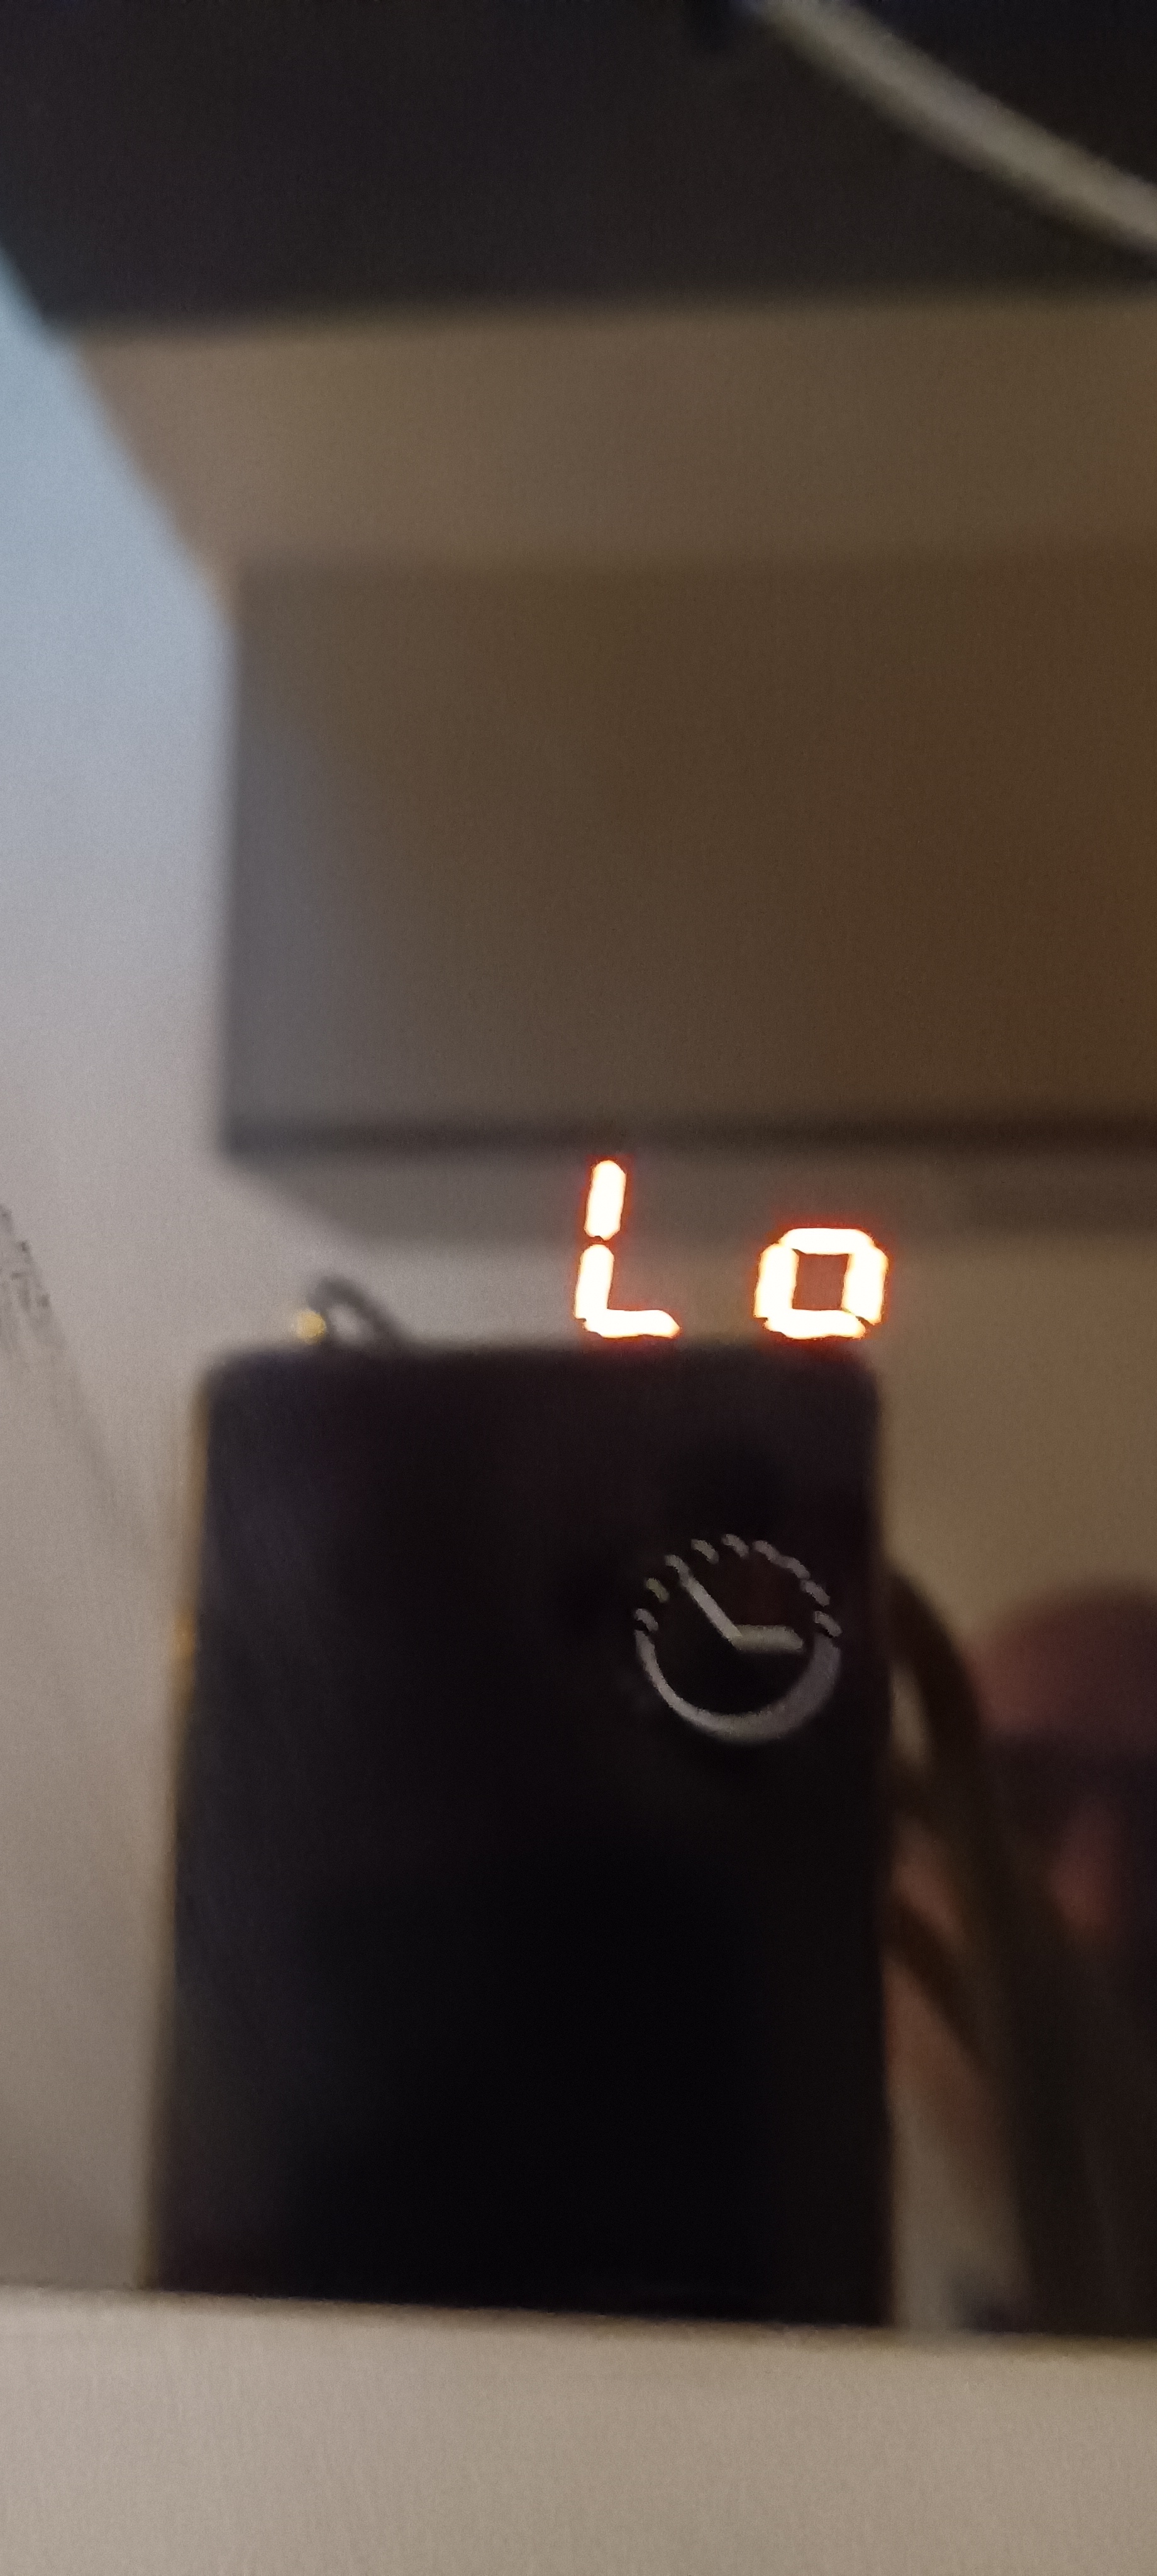 Hallo, mijn bord geeft deze foutcode "Lo" en ik kan geen informatie vinden over wat het ...